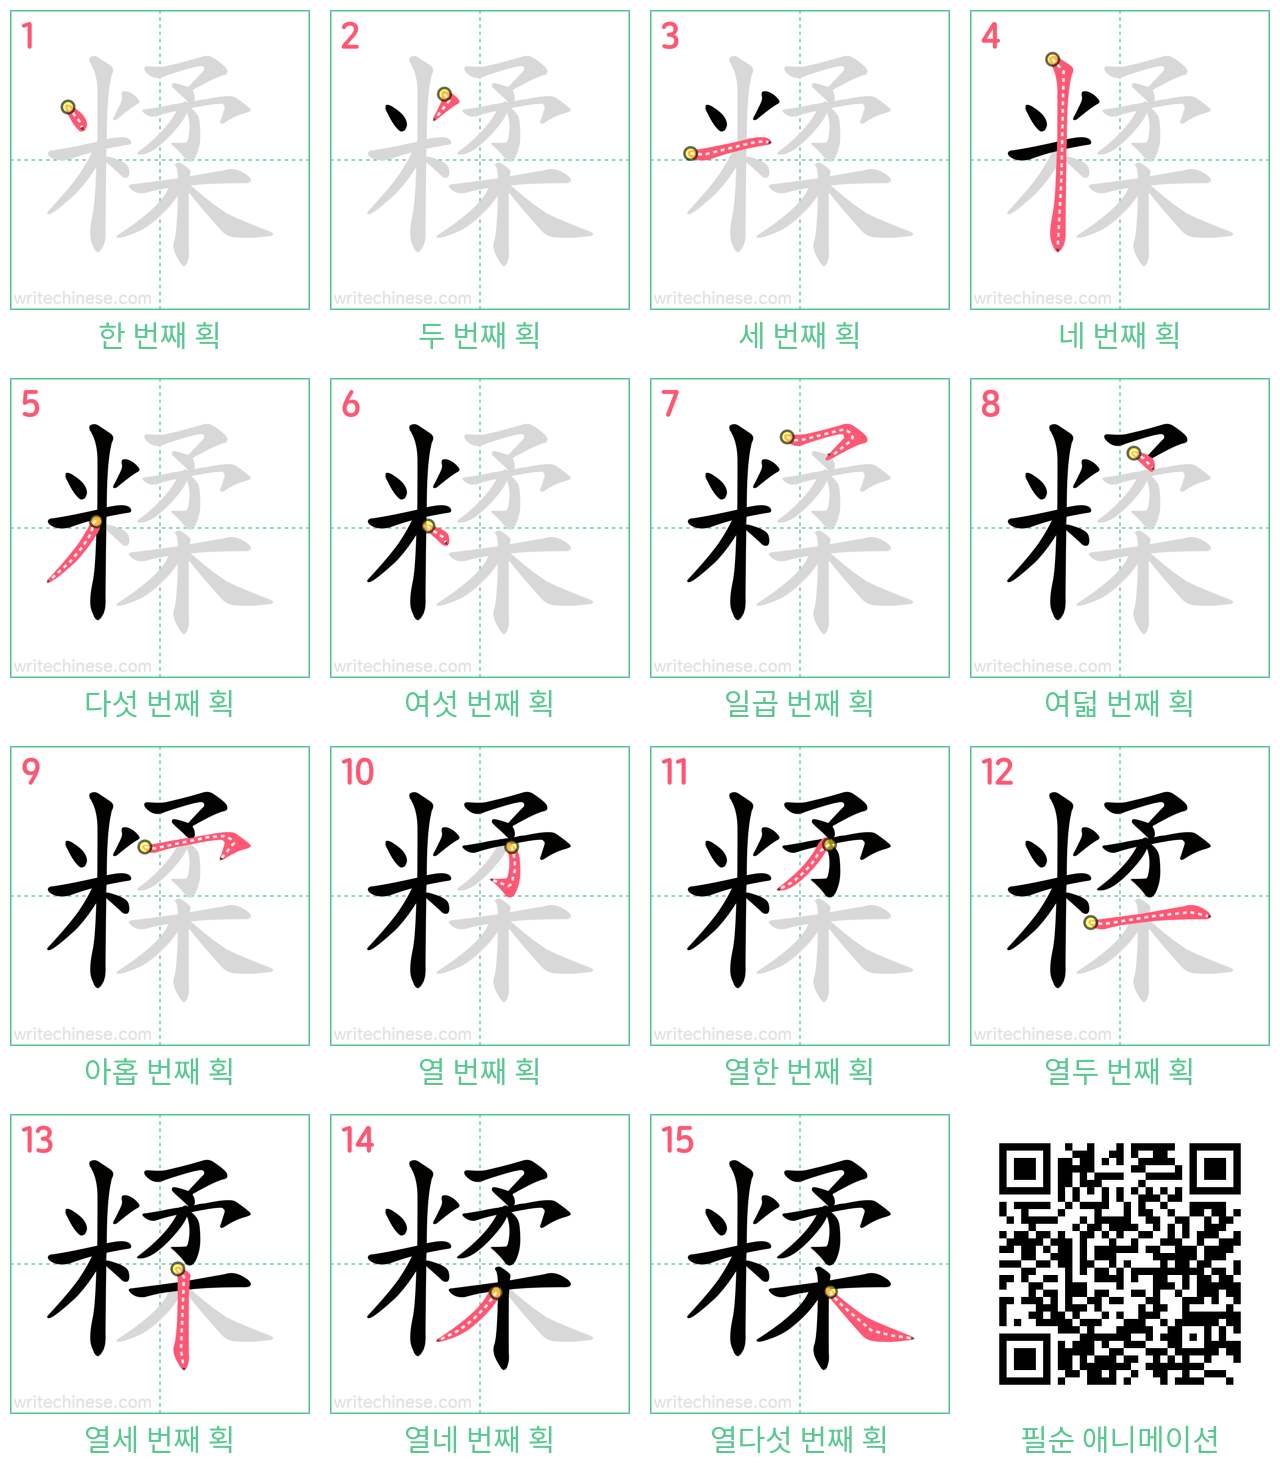 糅 step-by-step stroke order diagrams